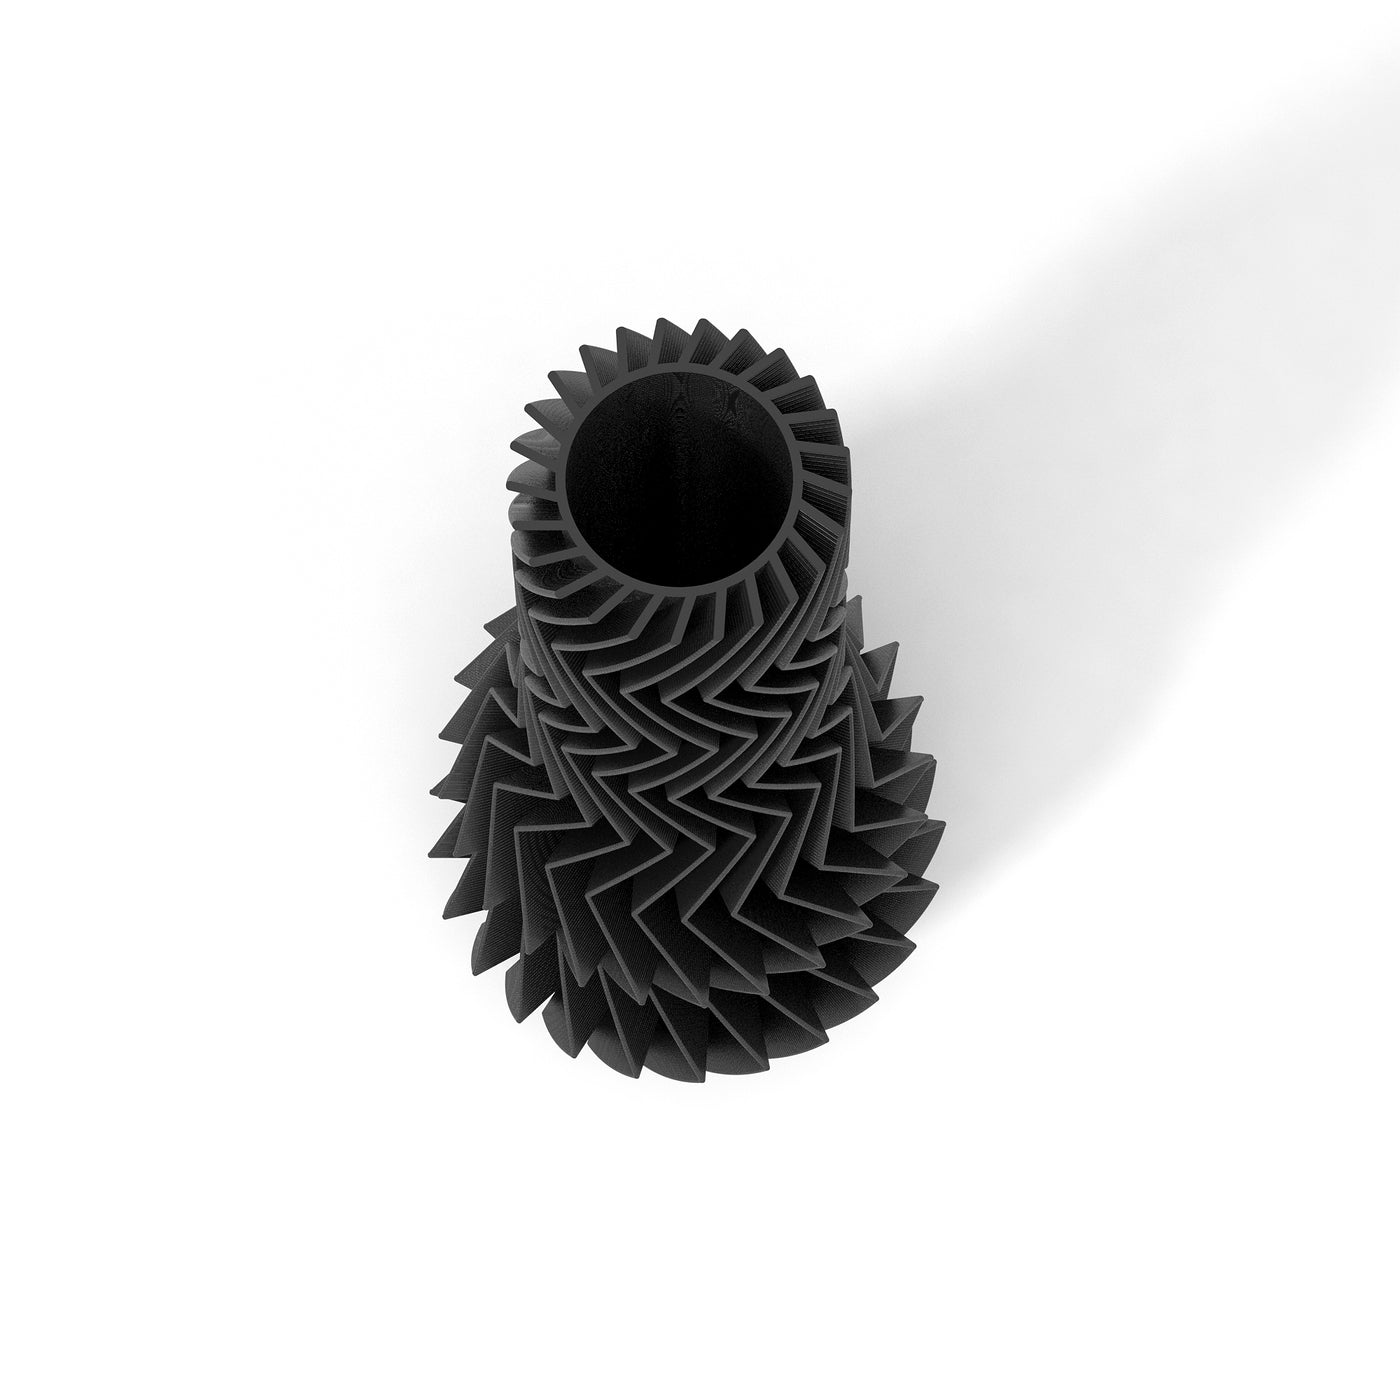 Černá designová váza 3D print ZIG ZAG 1 zeshora